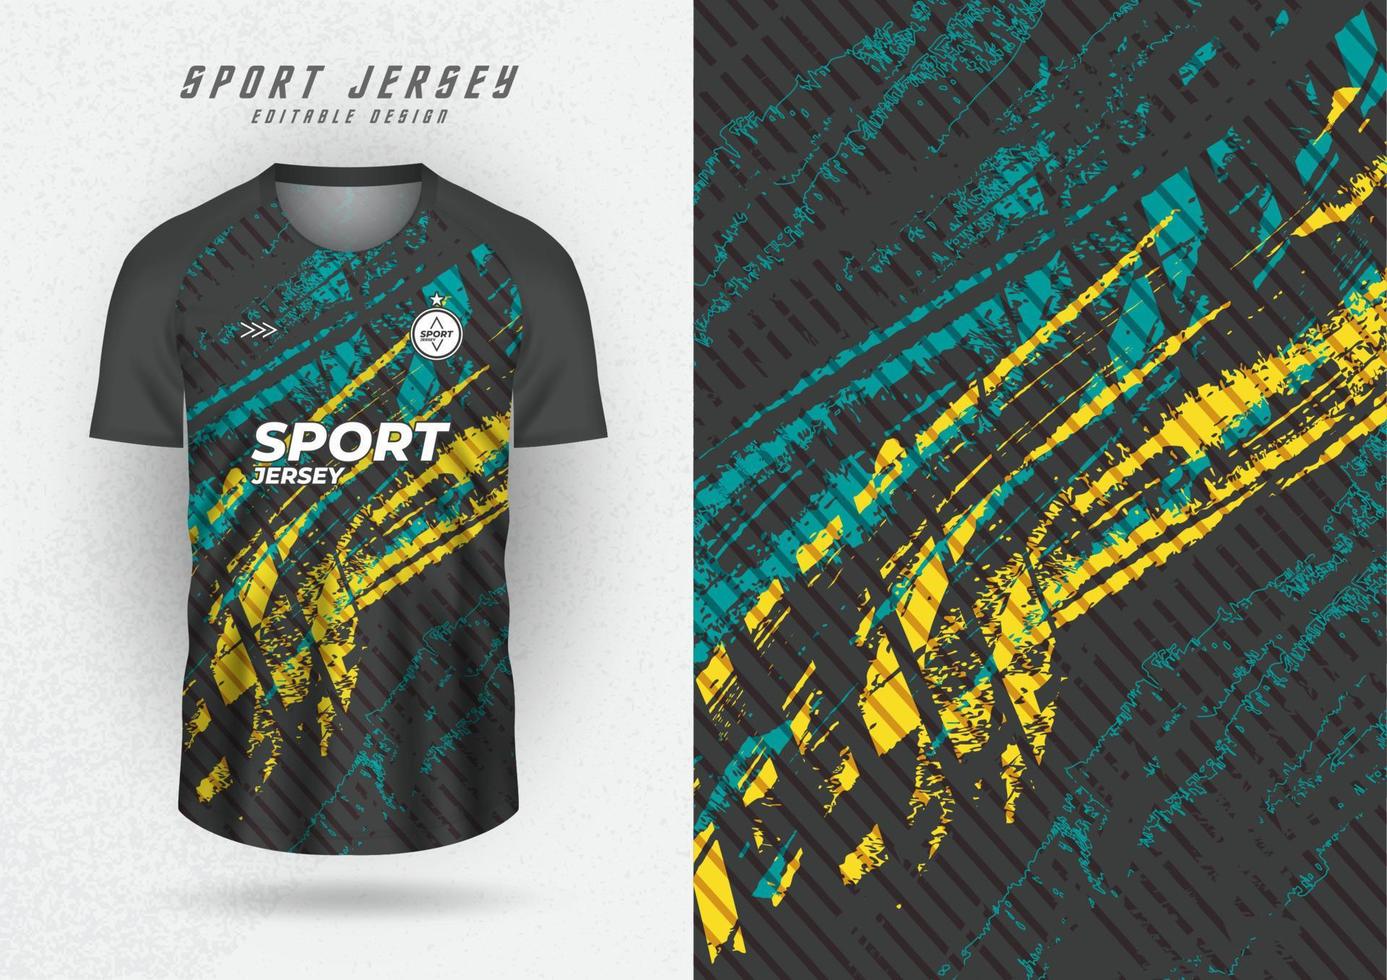 maquete de fundo para camisas de equipes esportivas, camisas e camisas de corrida, fundo preto com listras verdes e amarelas. vetor